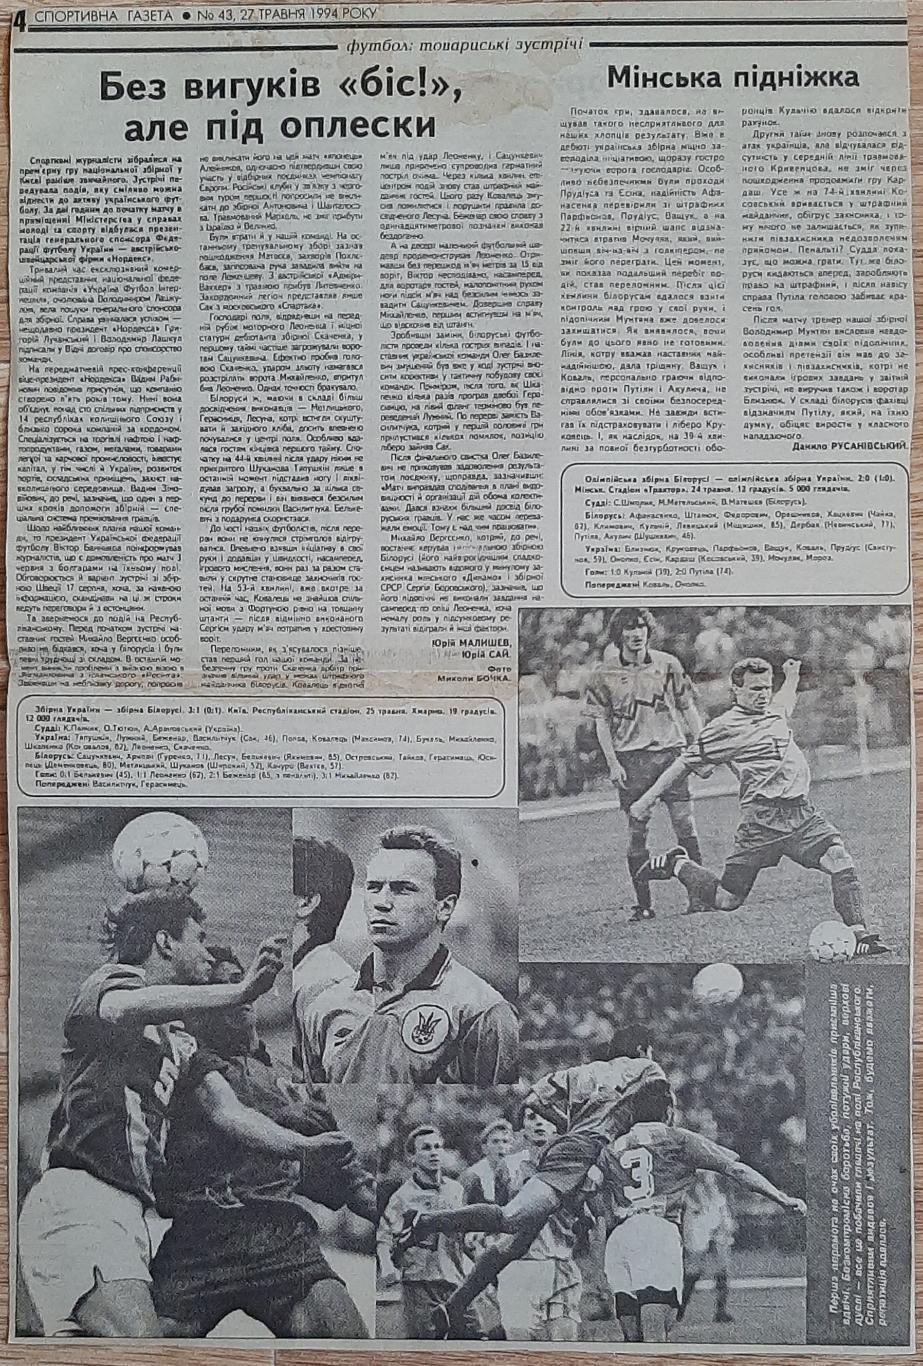 Вирізка зі Спортивної газети (27.05.1994) Україна -Білорусь